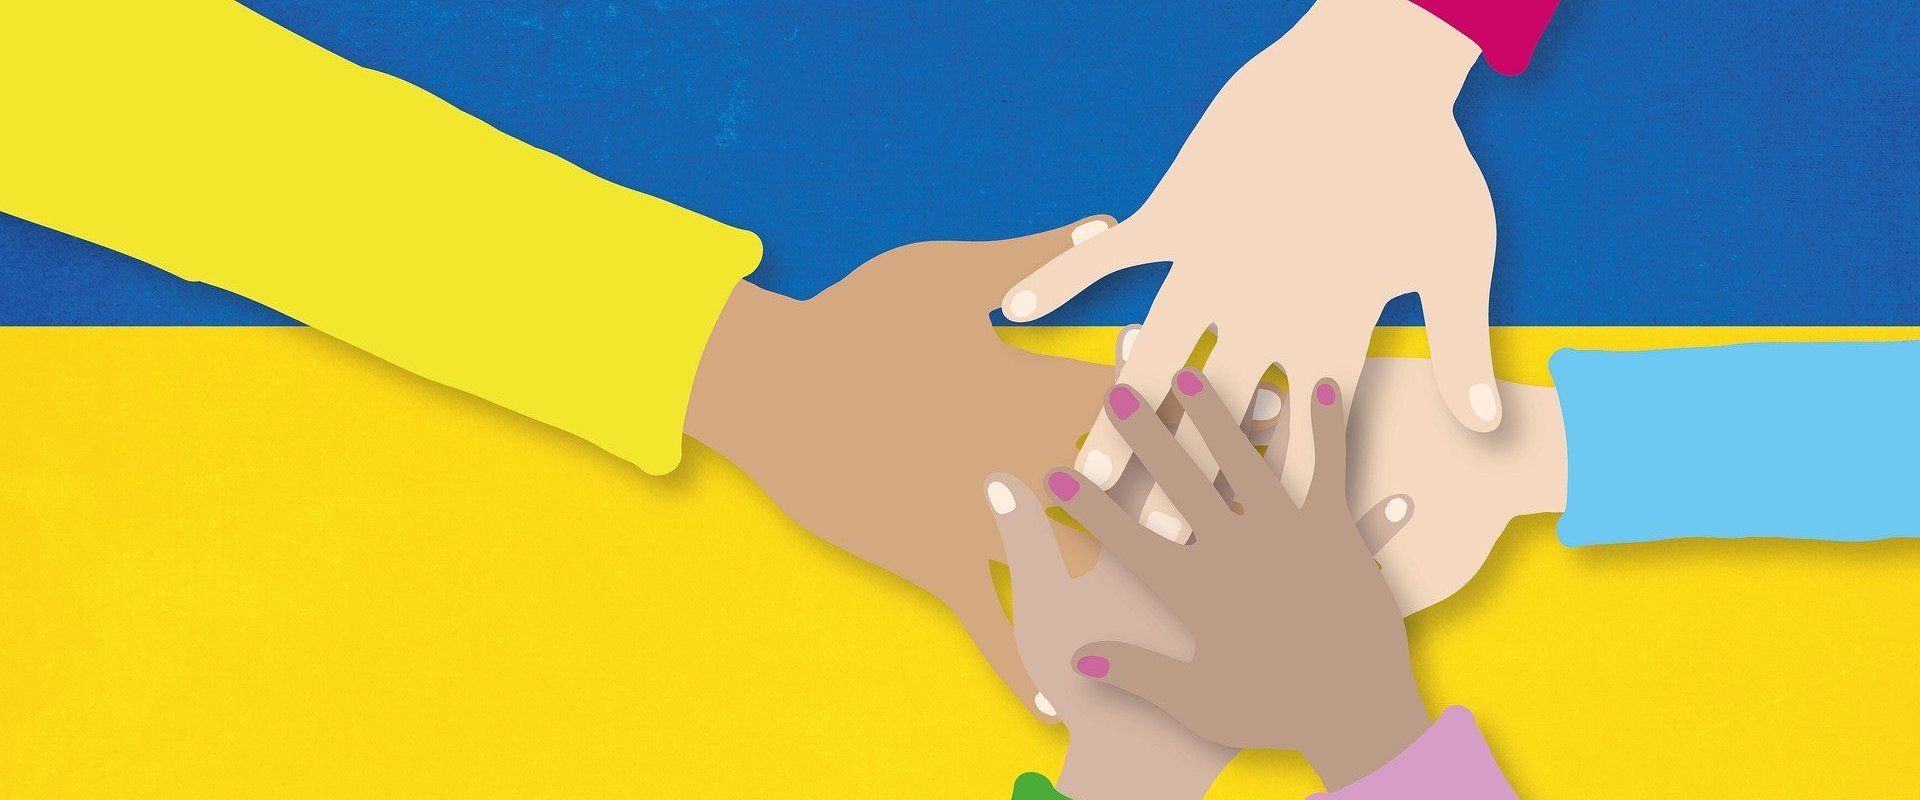 Flagge der Ukraine mit Händen